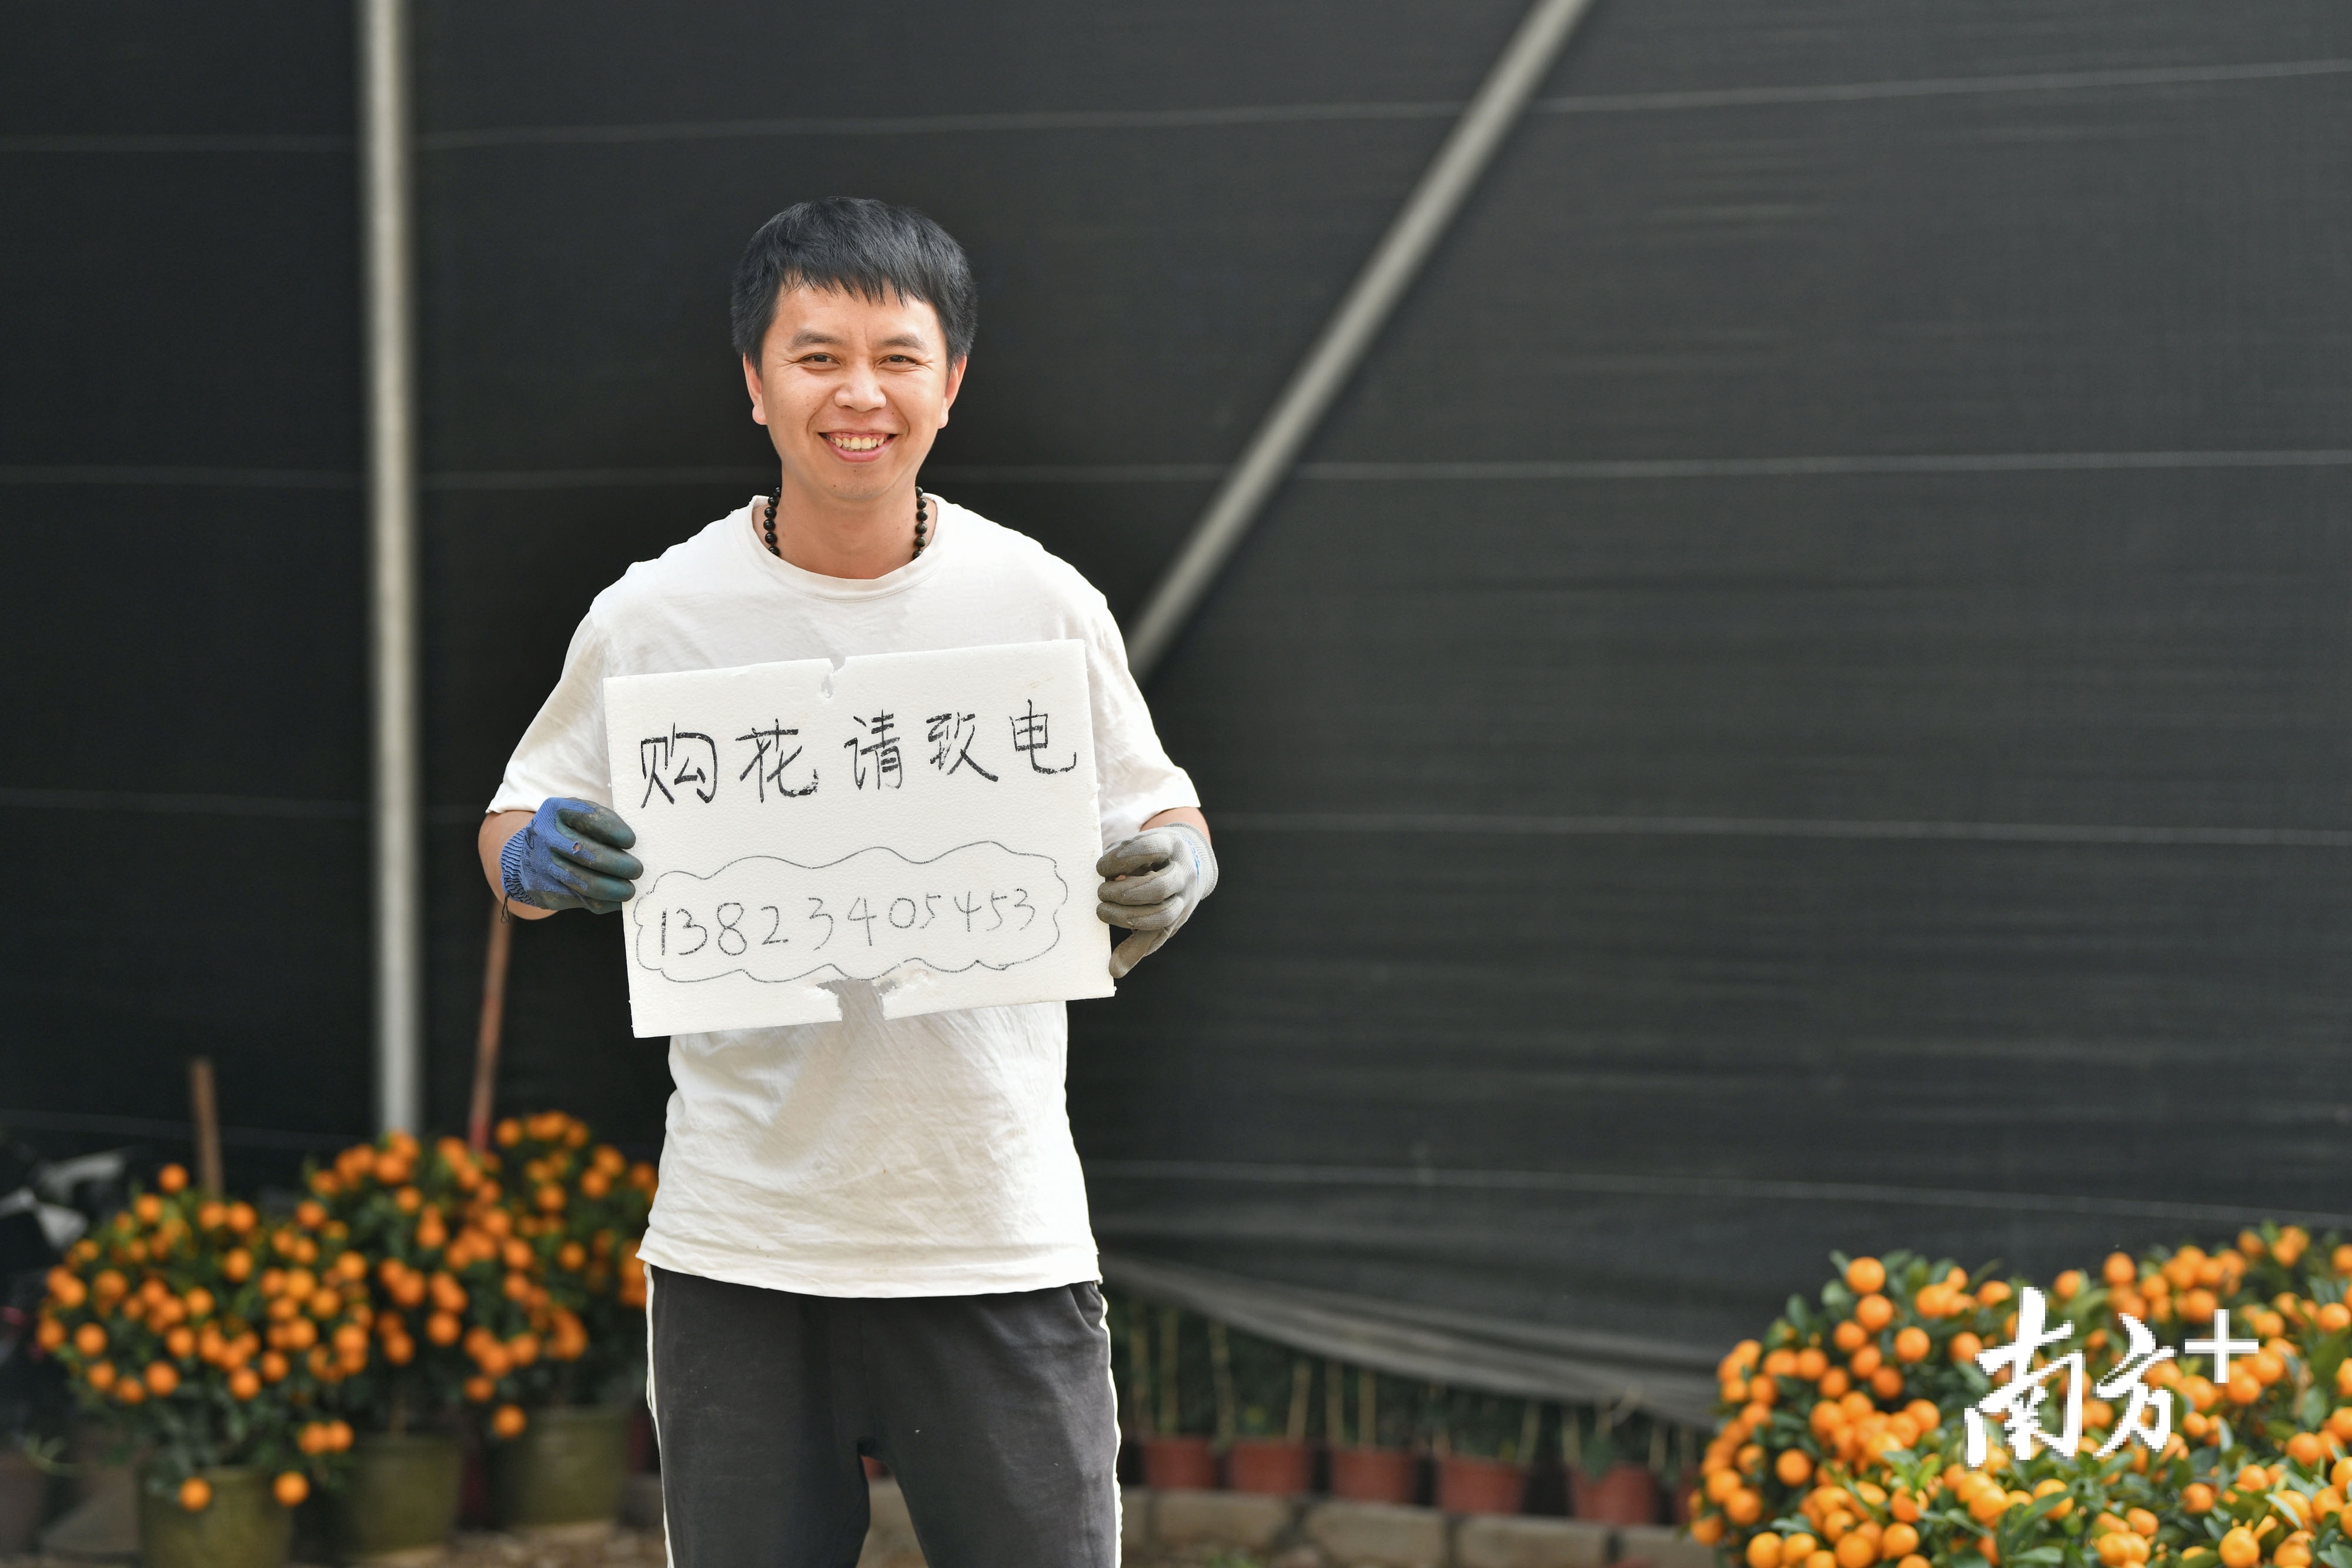 通过政府和社会各界的多项举措助力和积极自救，吴志江的年桔销售逐渐有了起色，脸上多日的愁容终于有了笑意。